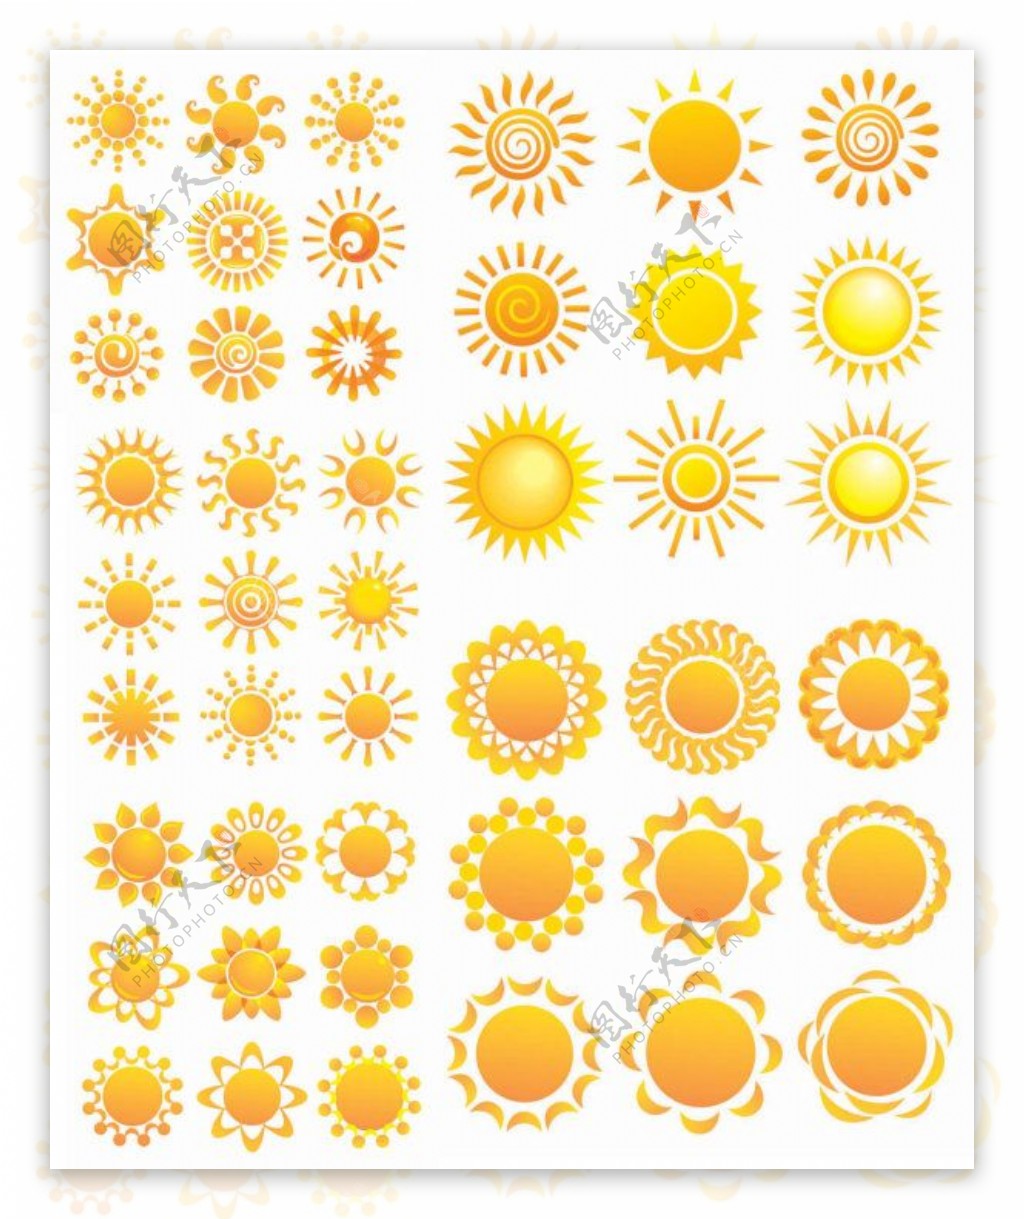 多款太阳花纹样矢量素材